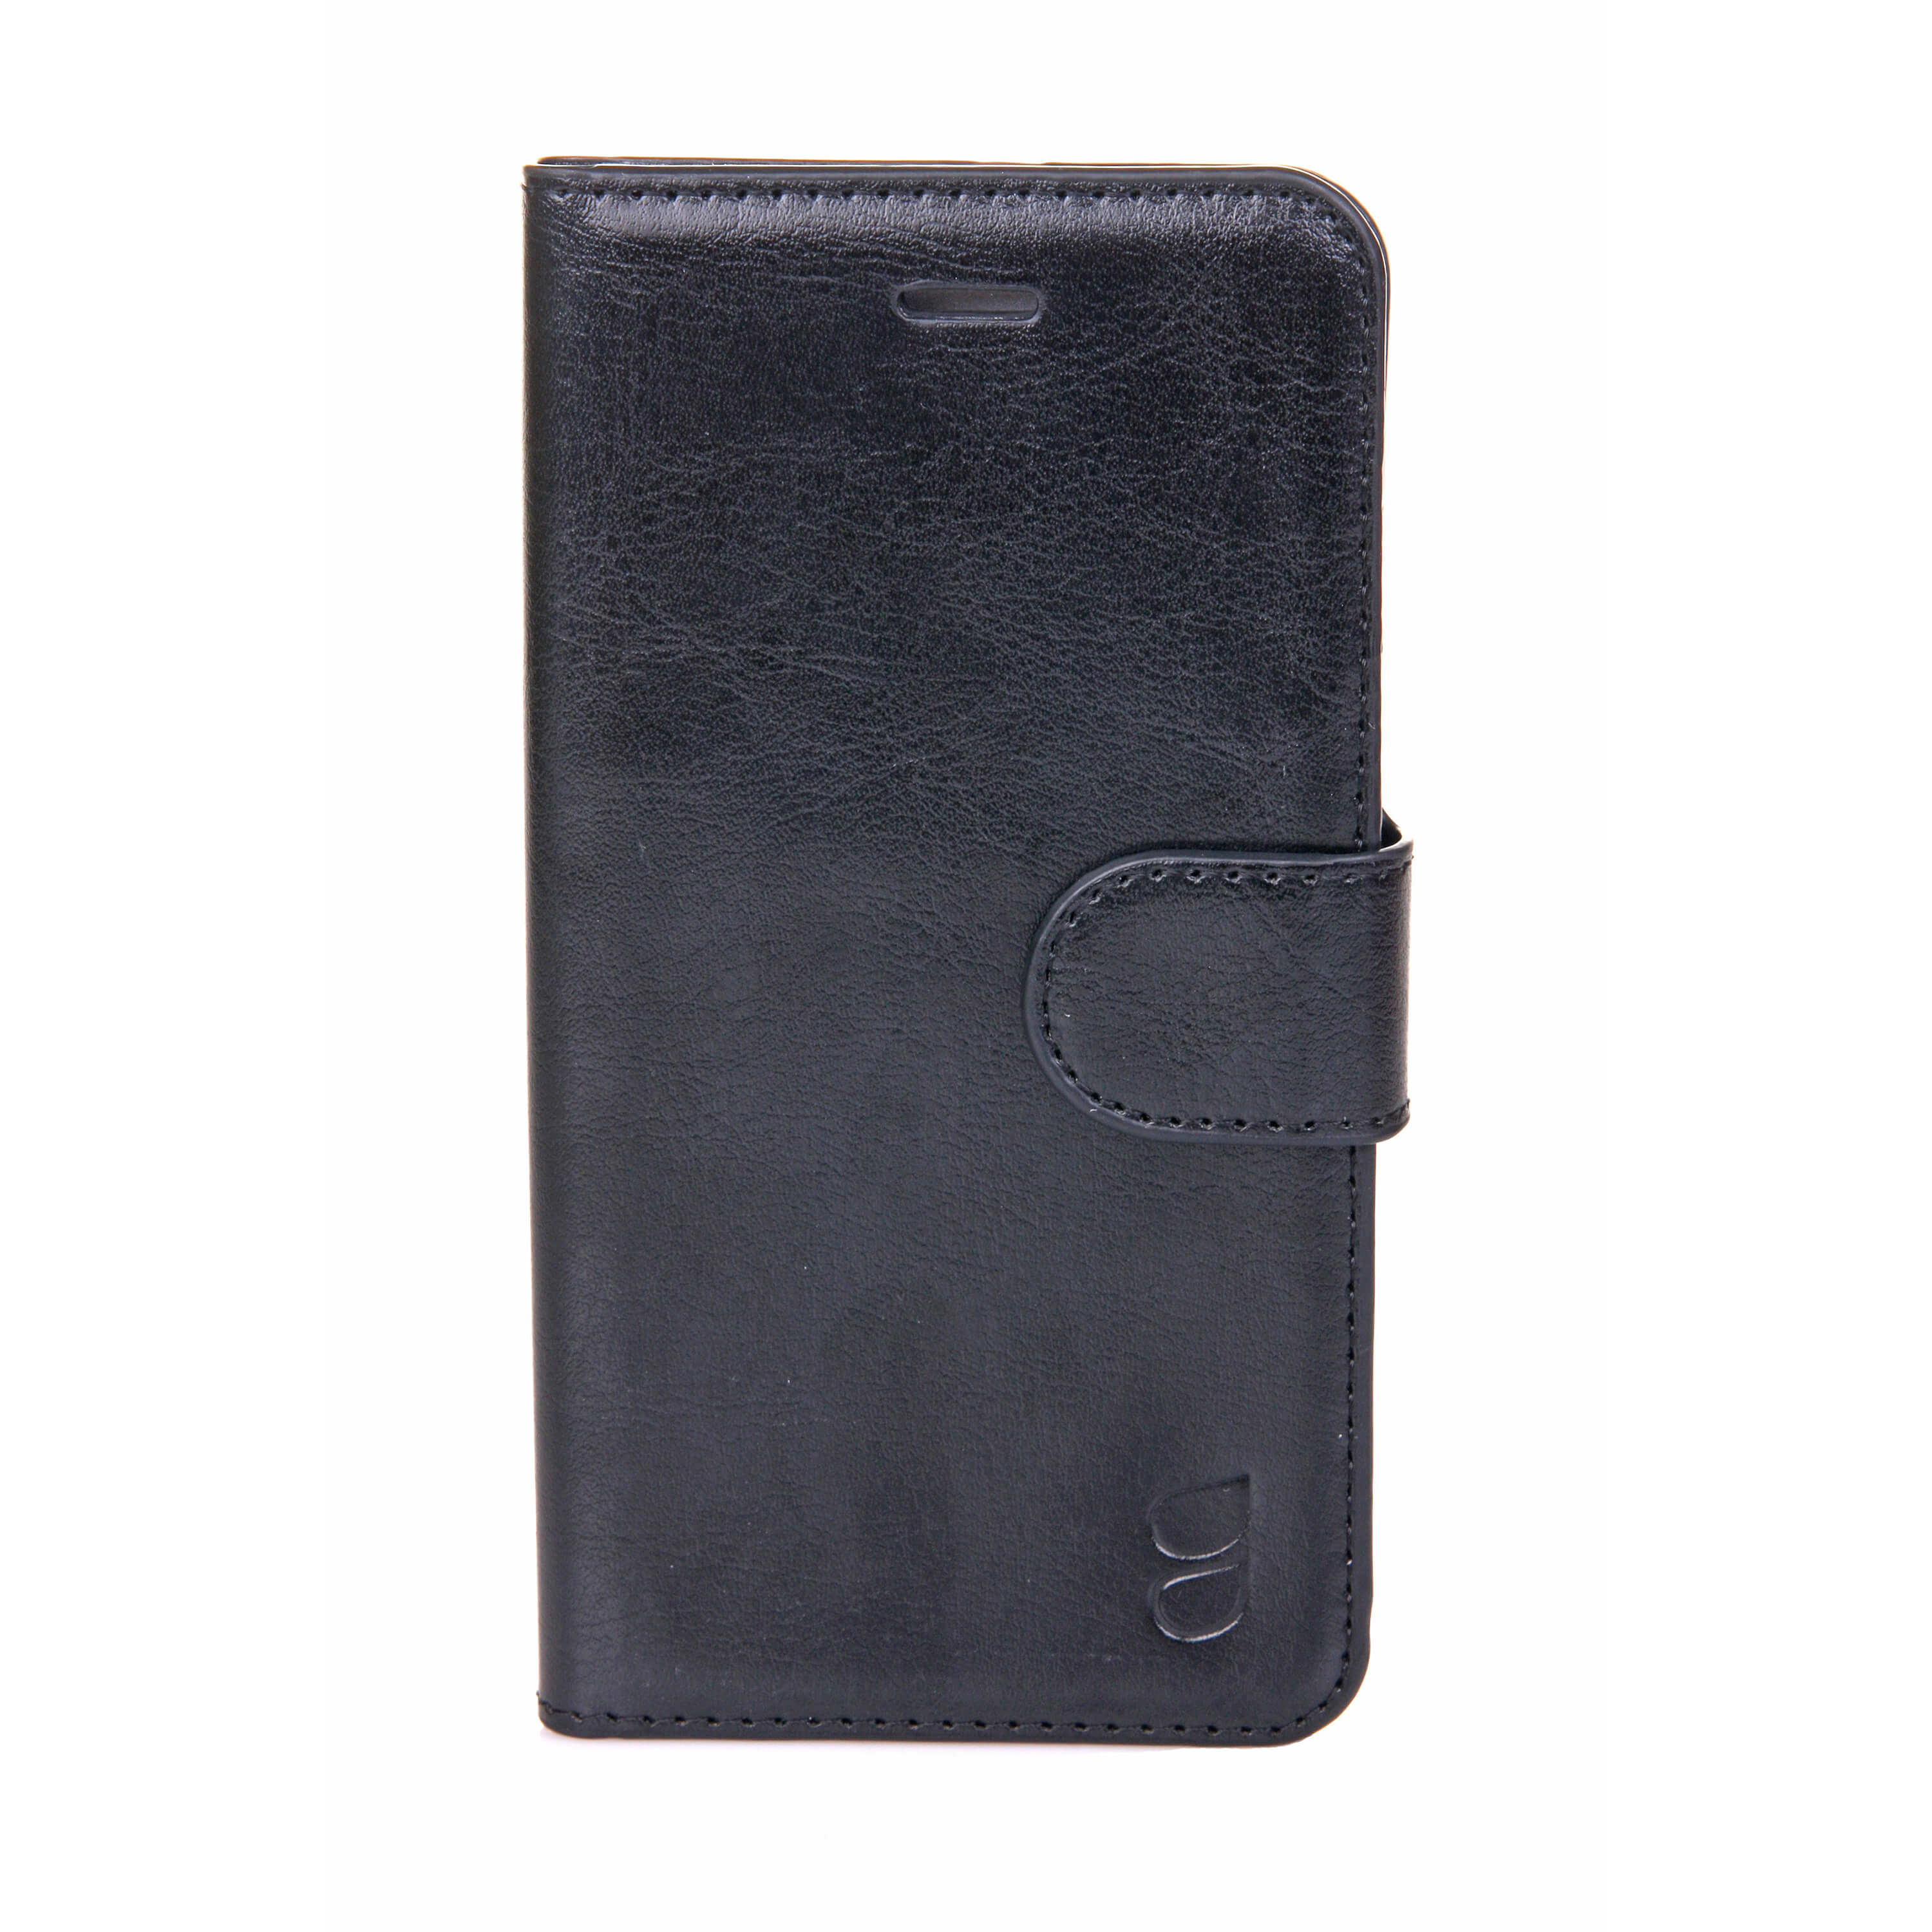 Wallet Case Exclusive Black - iPhone 6/6S  